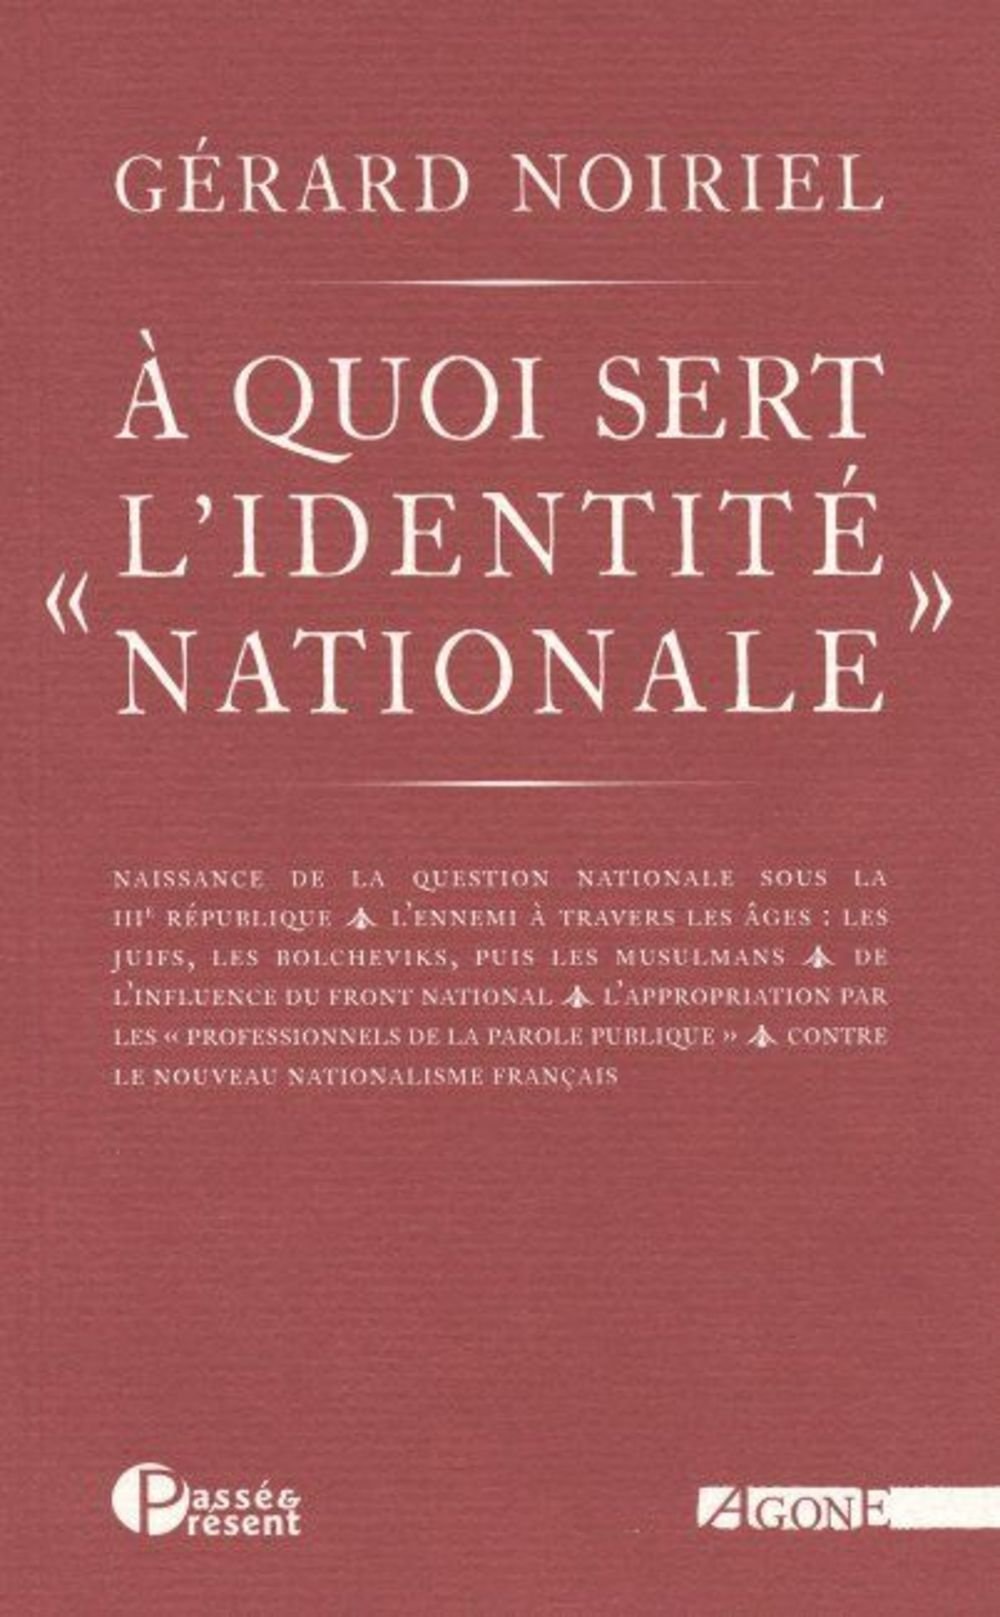 Couverture de "A quoi sert "l’identité nationale" " de G.Noiriel